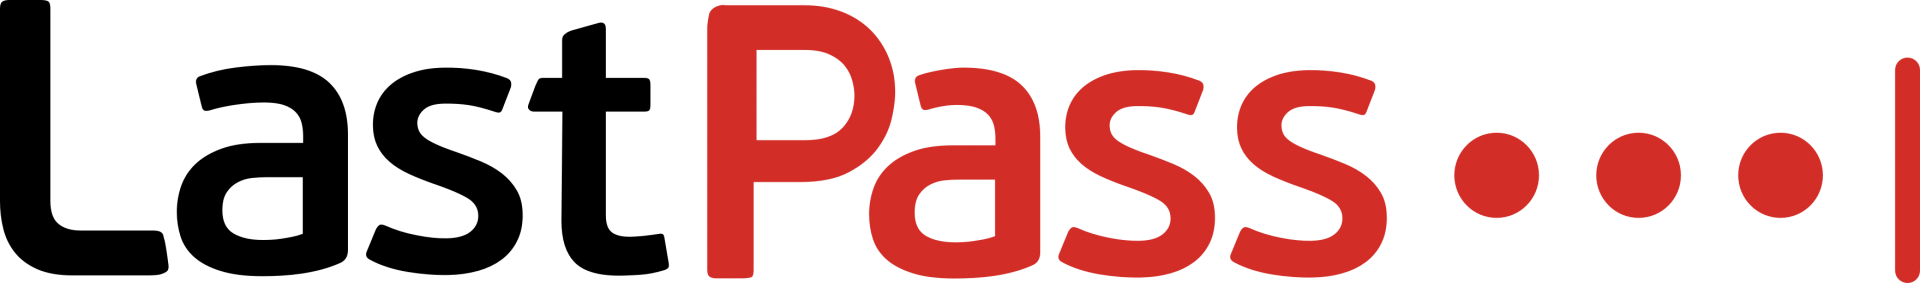 Lastpass logo color